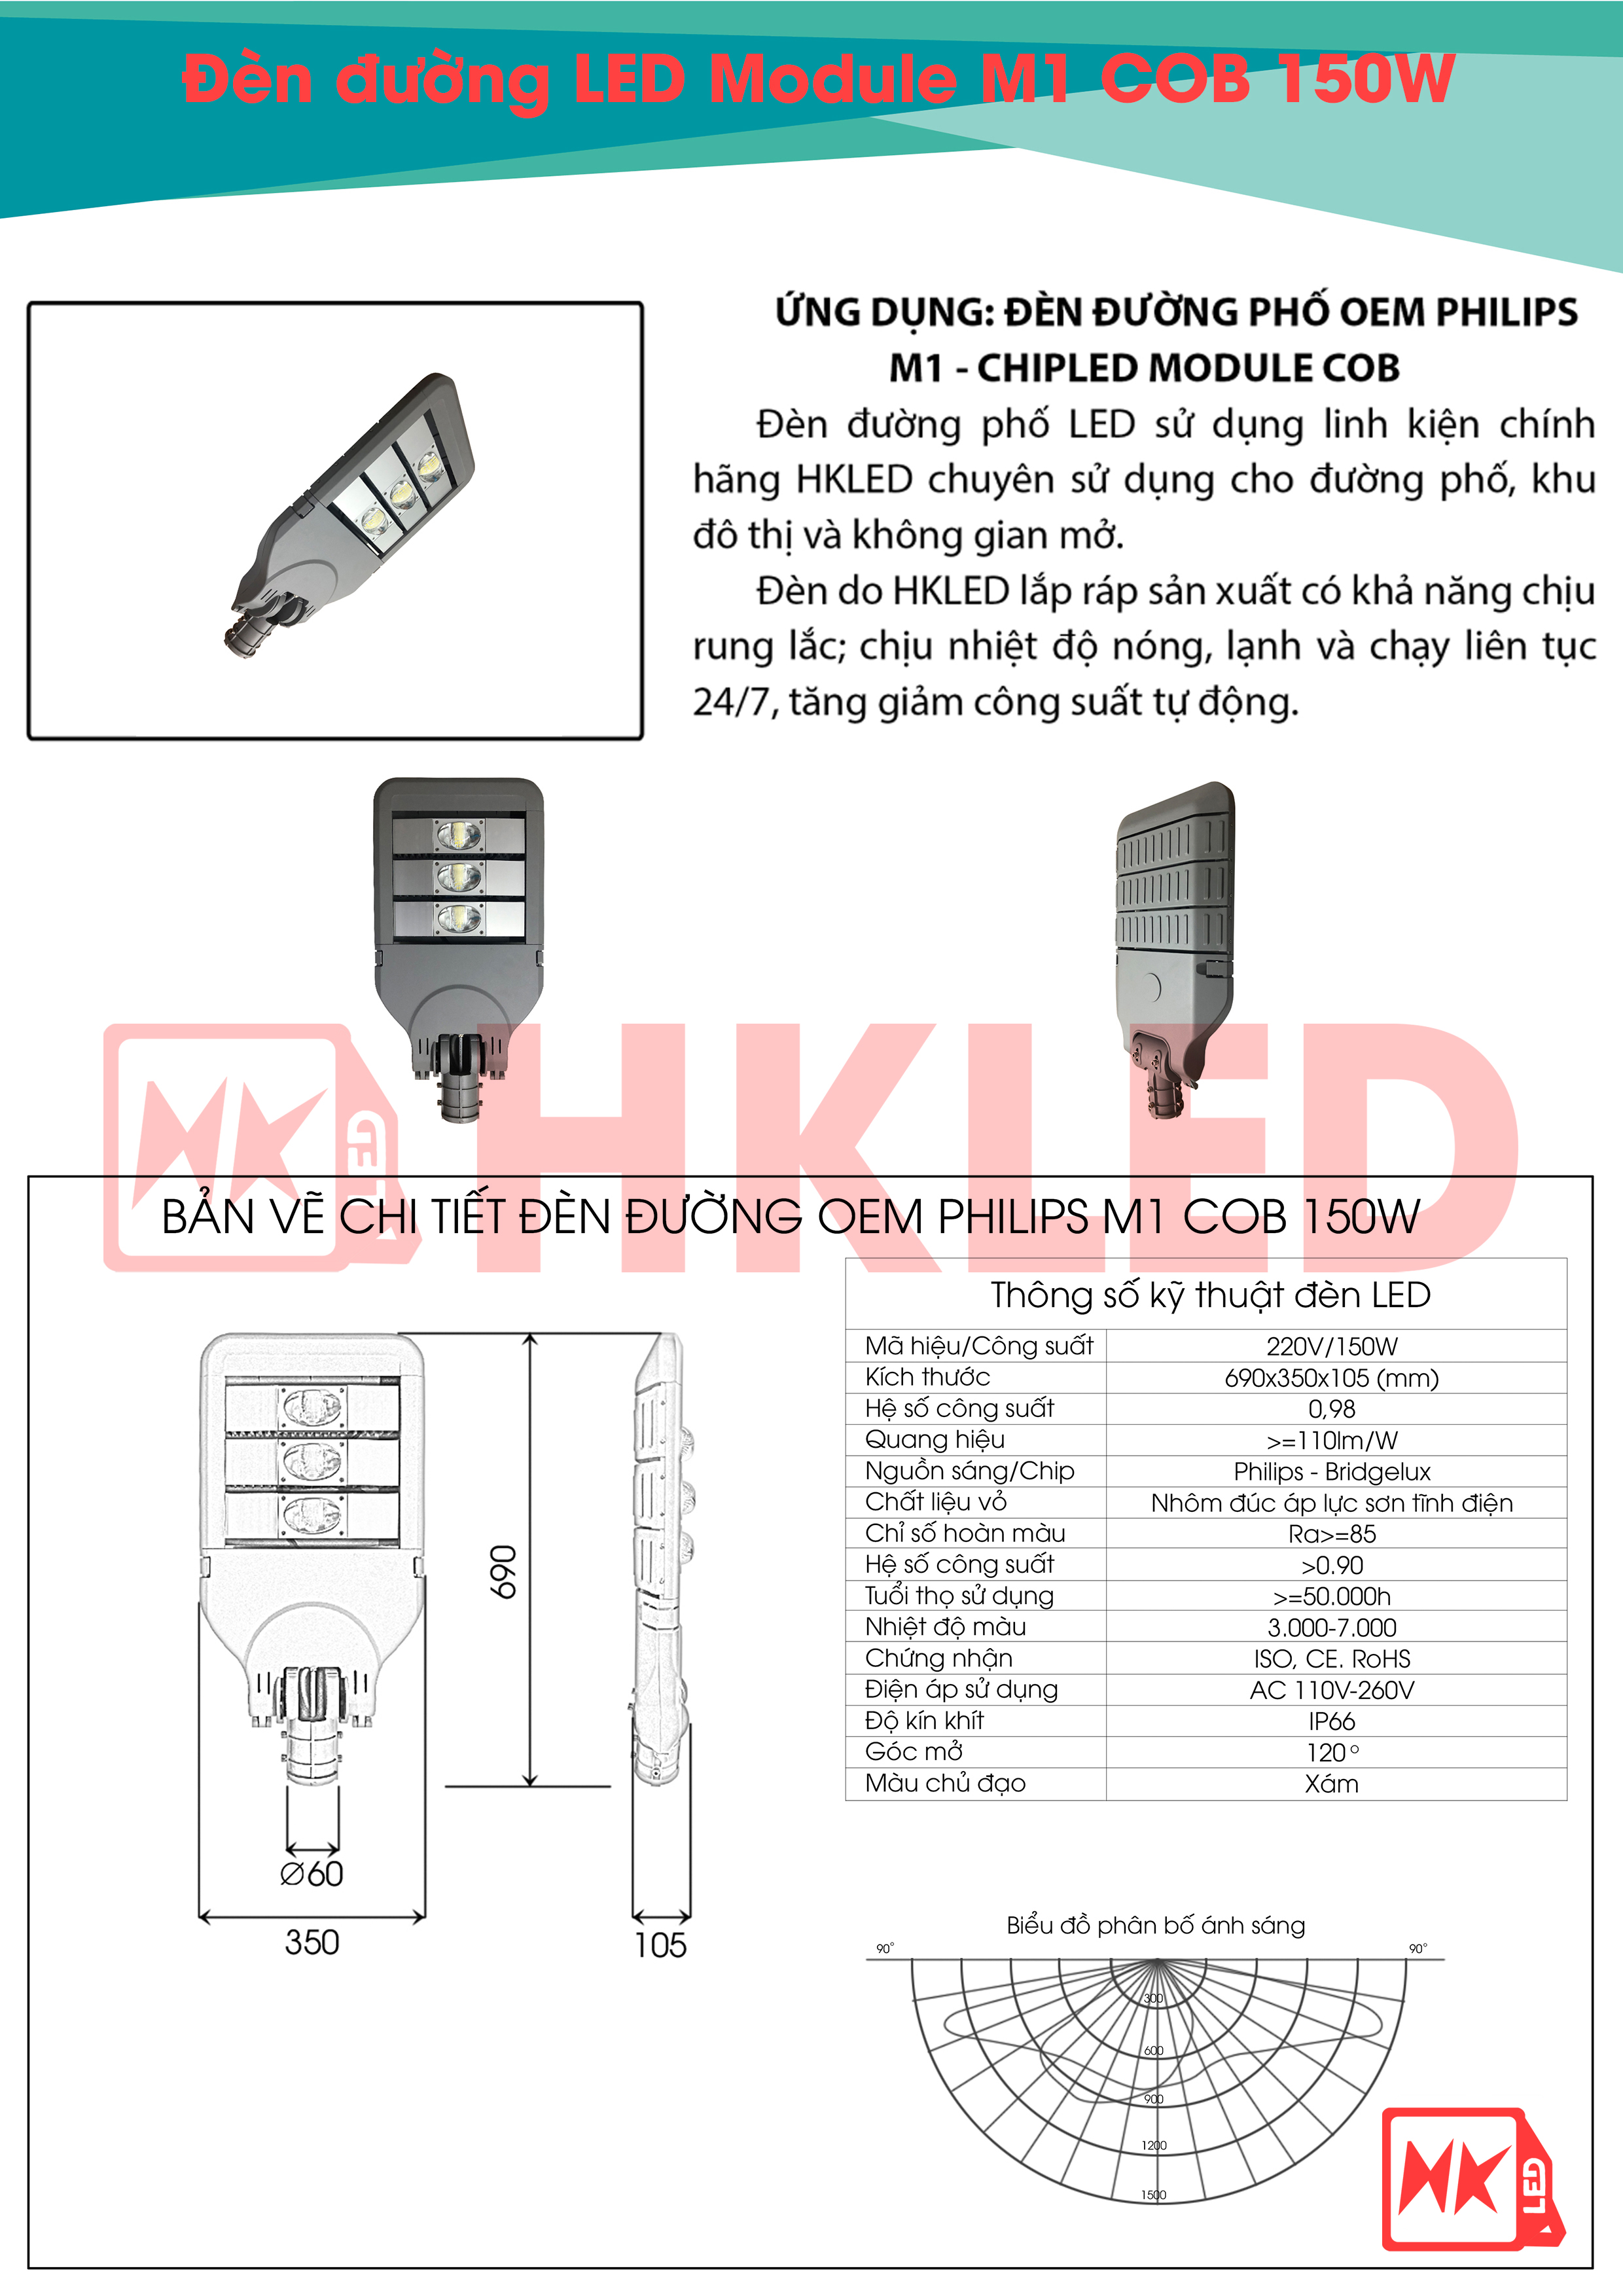 Ứng dụng, bản vẽ chi tiết và thông số kỹ thuật đèn đường LED OEM Philips M1 Module COB 150W